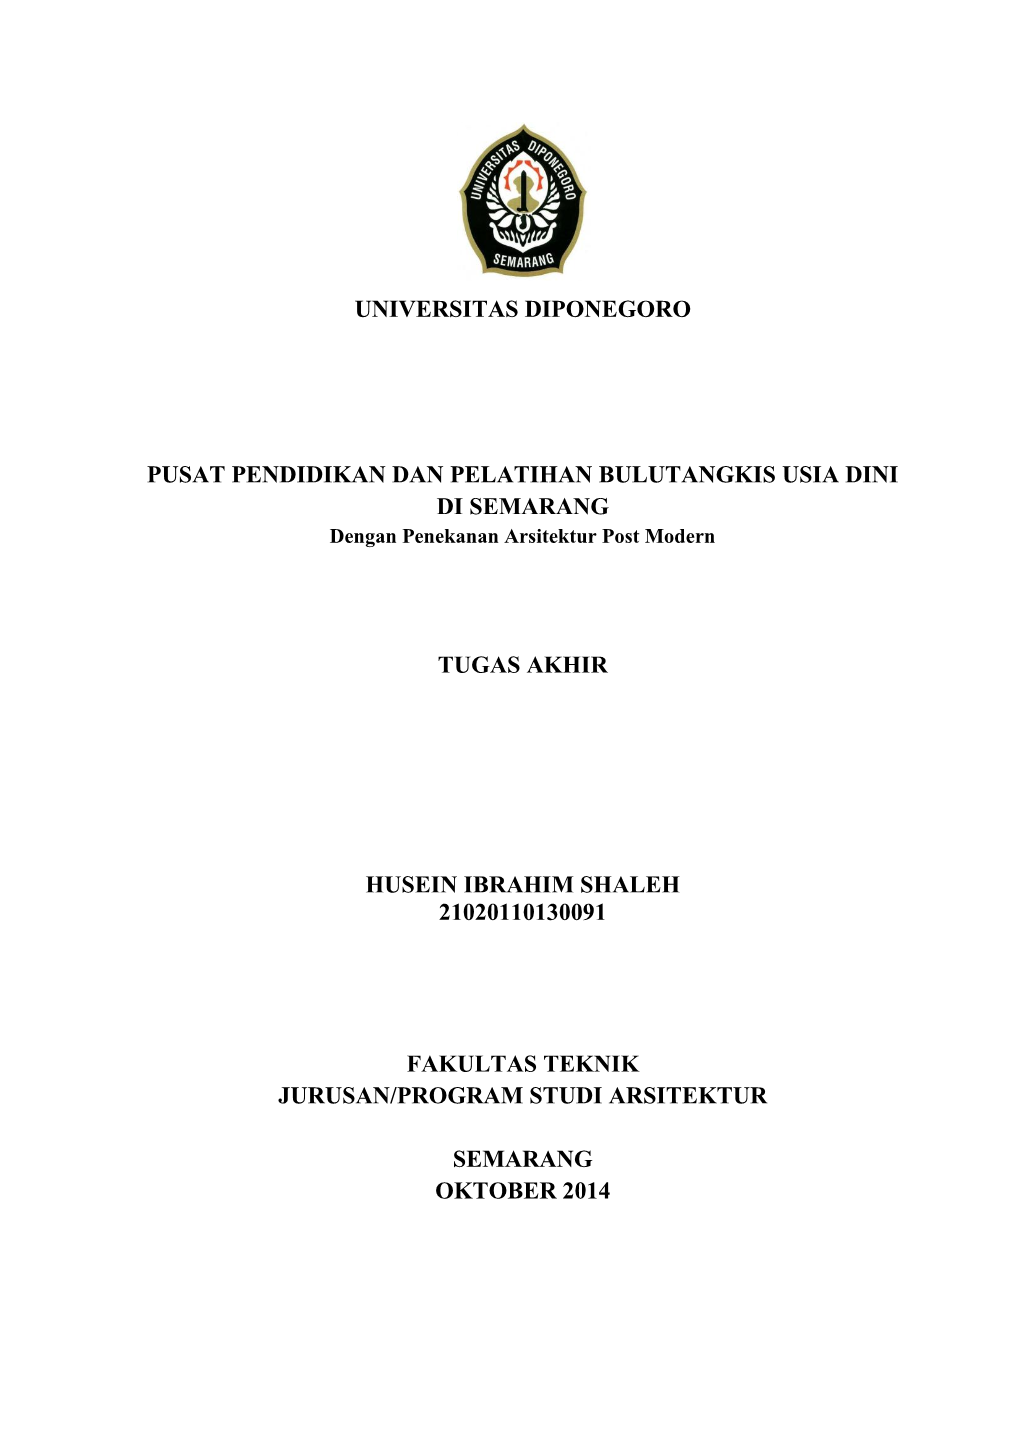 Universitas Diponegoro Pusat Pendidikan Dan Pelatihan Bulutangkis Usia Dini Di Semarang Tugas Akhir Husein Ibrahim Shaleh 210201